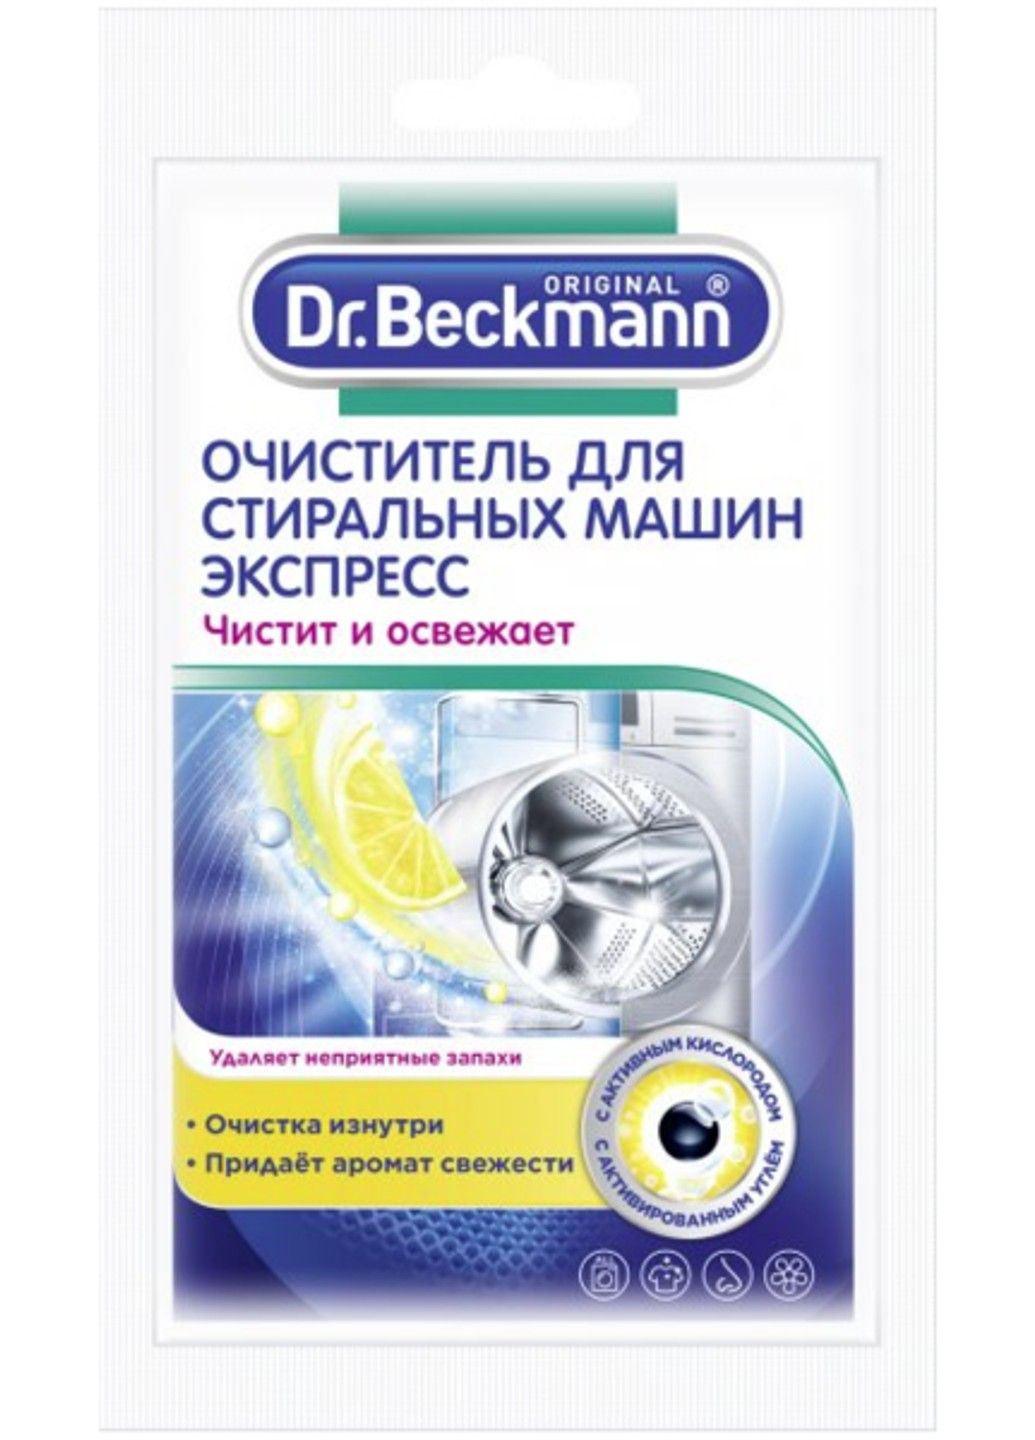 Очиститель для стиральных машин Dr.Beckmann Экспресс, 100 г Dr. Beckmann (280898483)